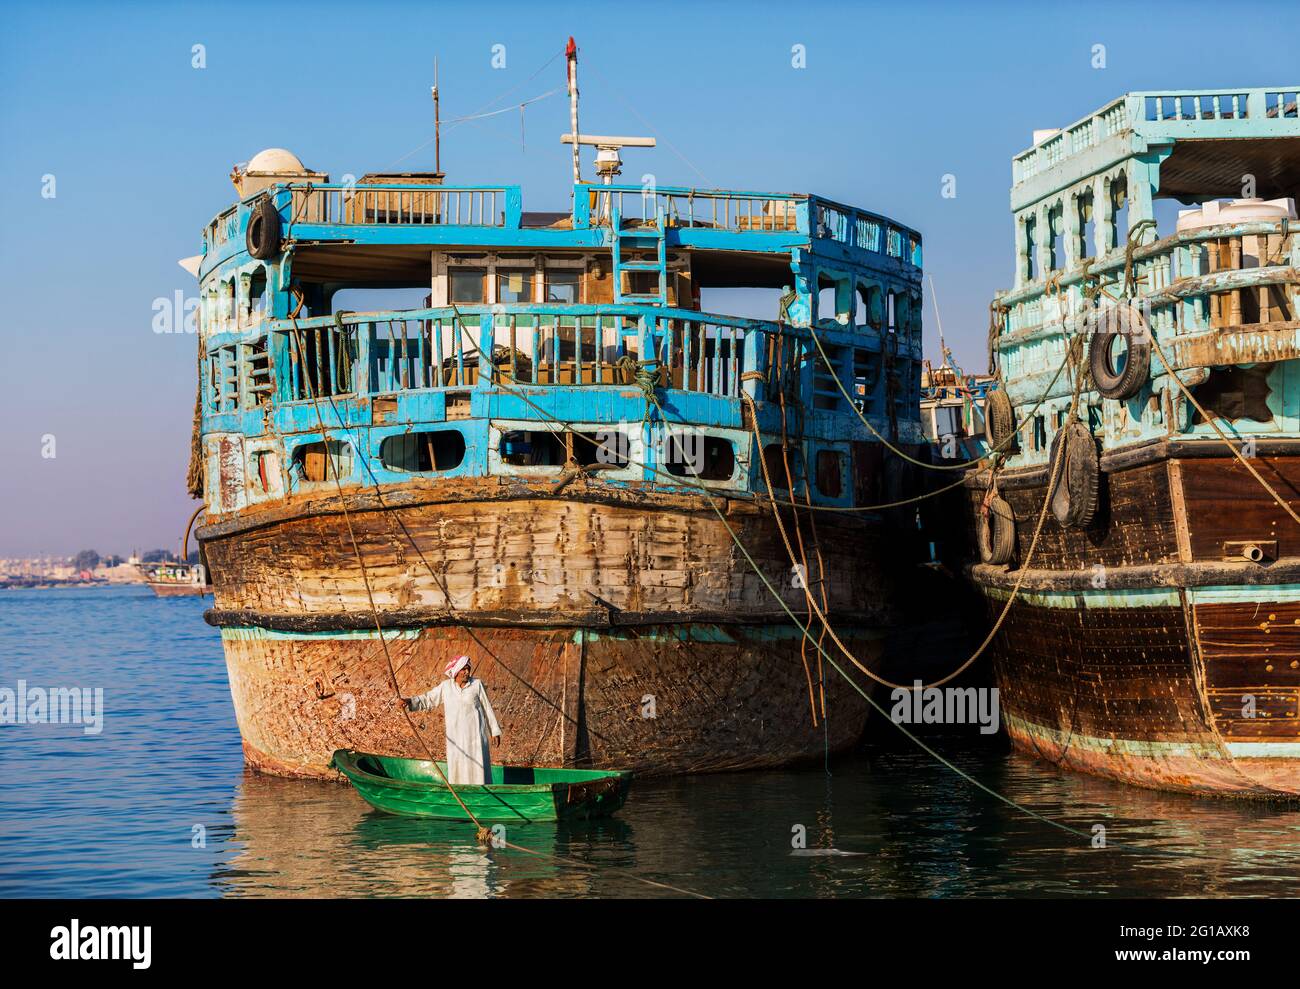 La ciudad de Bandar-e Kong es una histórica ciudad portuaria cerca de Bandar Lengeh en la provincia de Hormozgan, en el sur de Irán, frente al Golfo Pérsico. Foto de stock